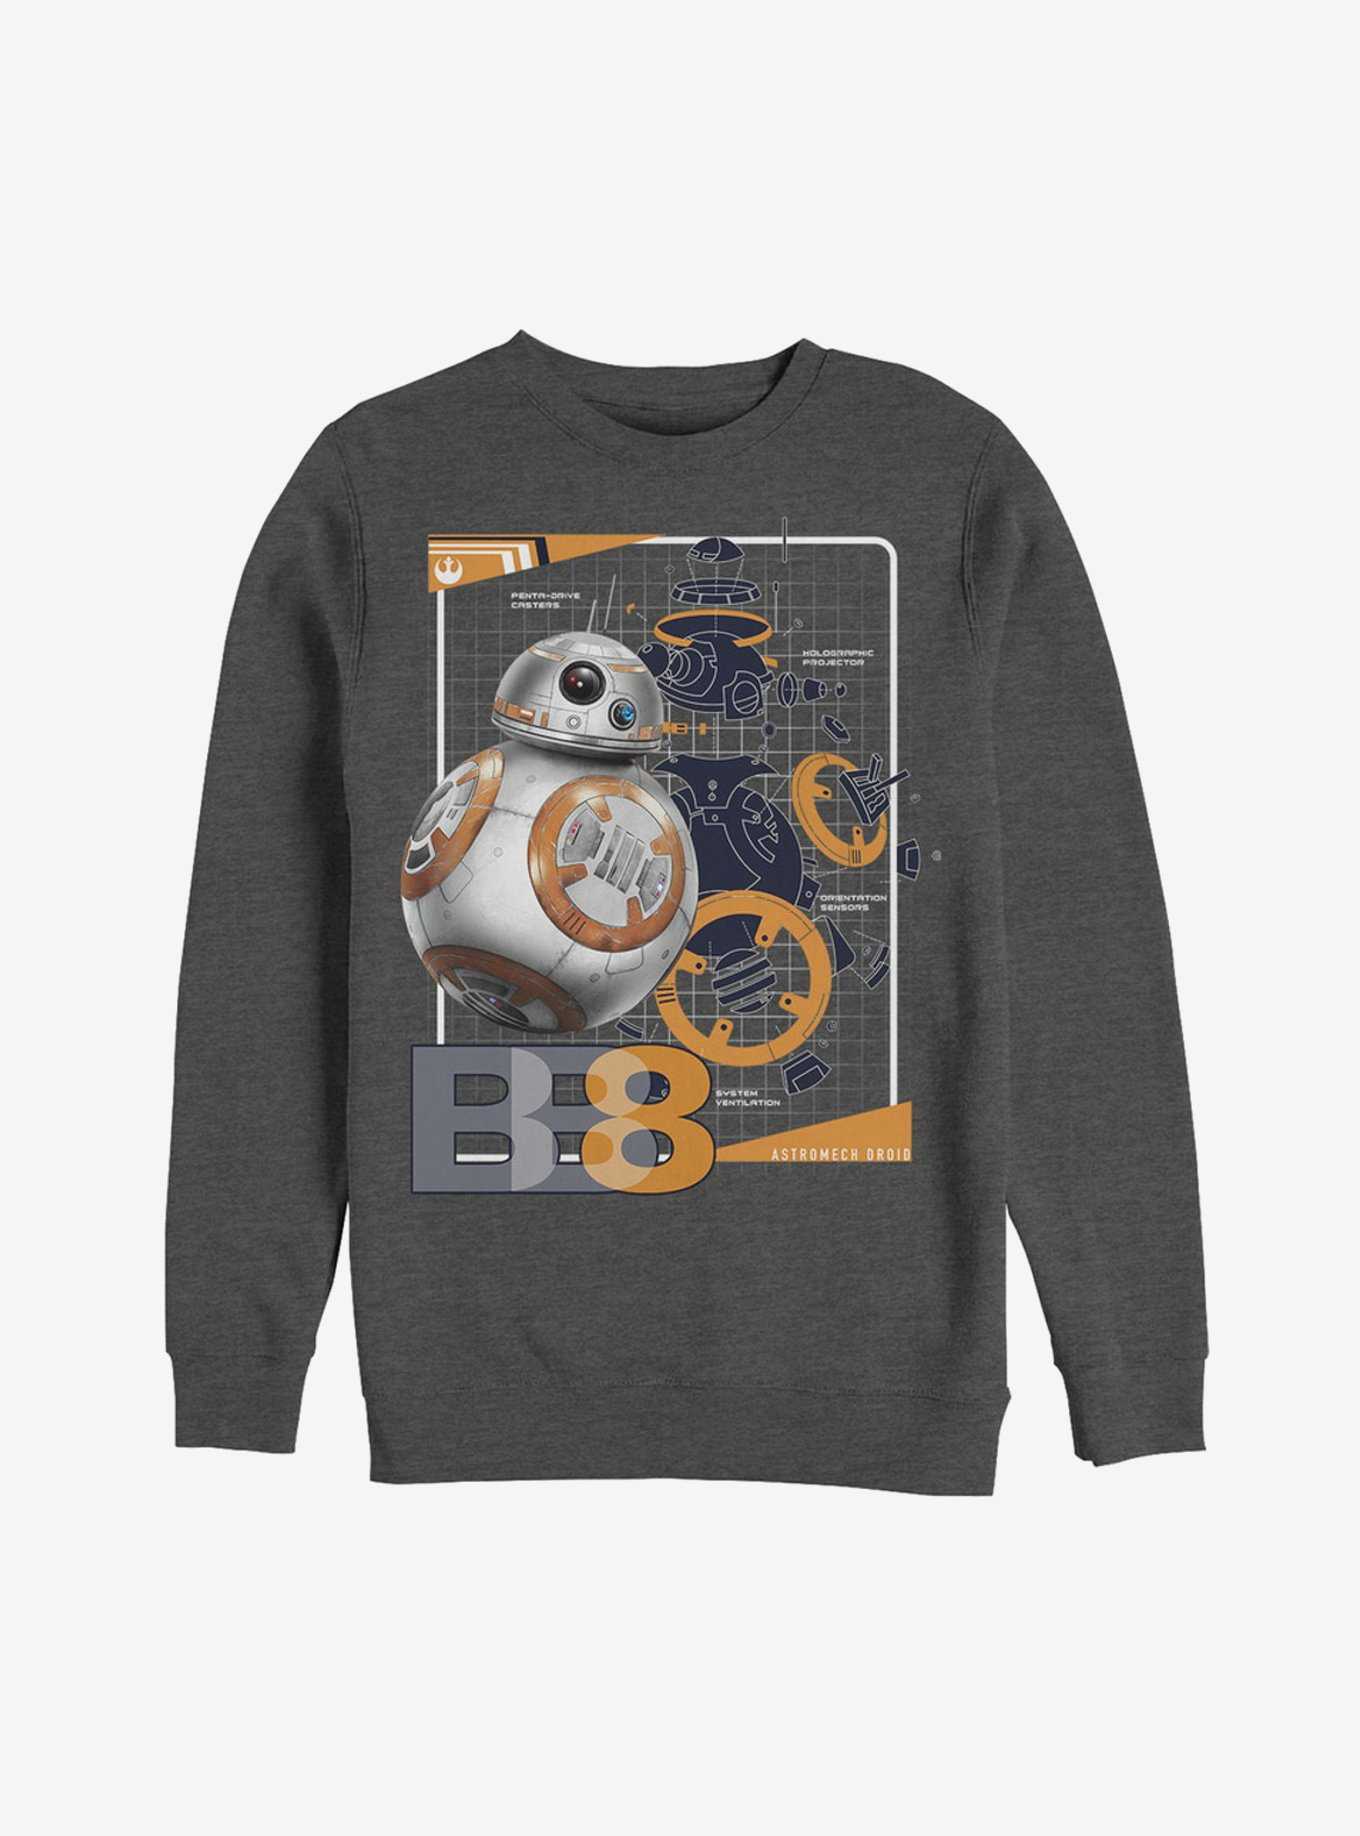 Star Wars BB-8 Schematics Sweatshirt, , hi-res